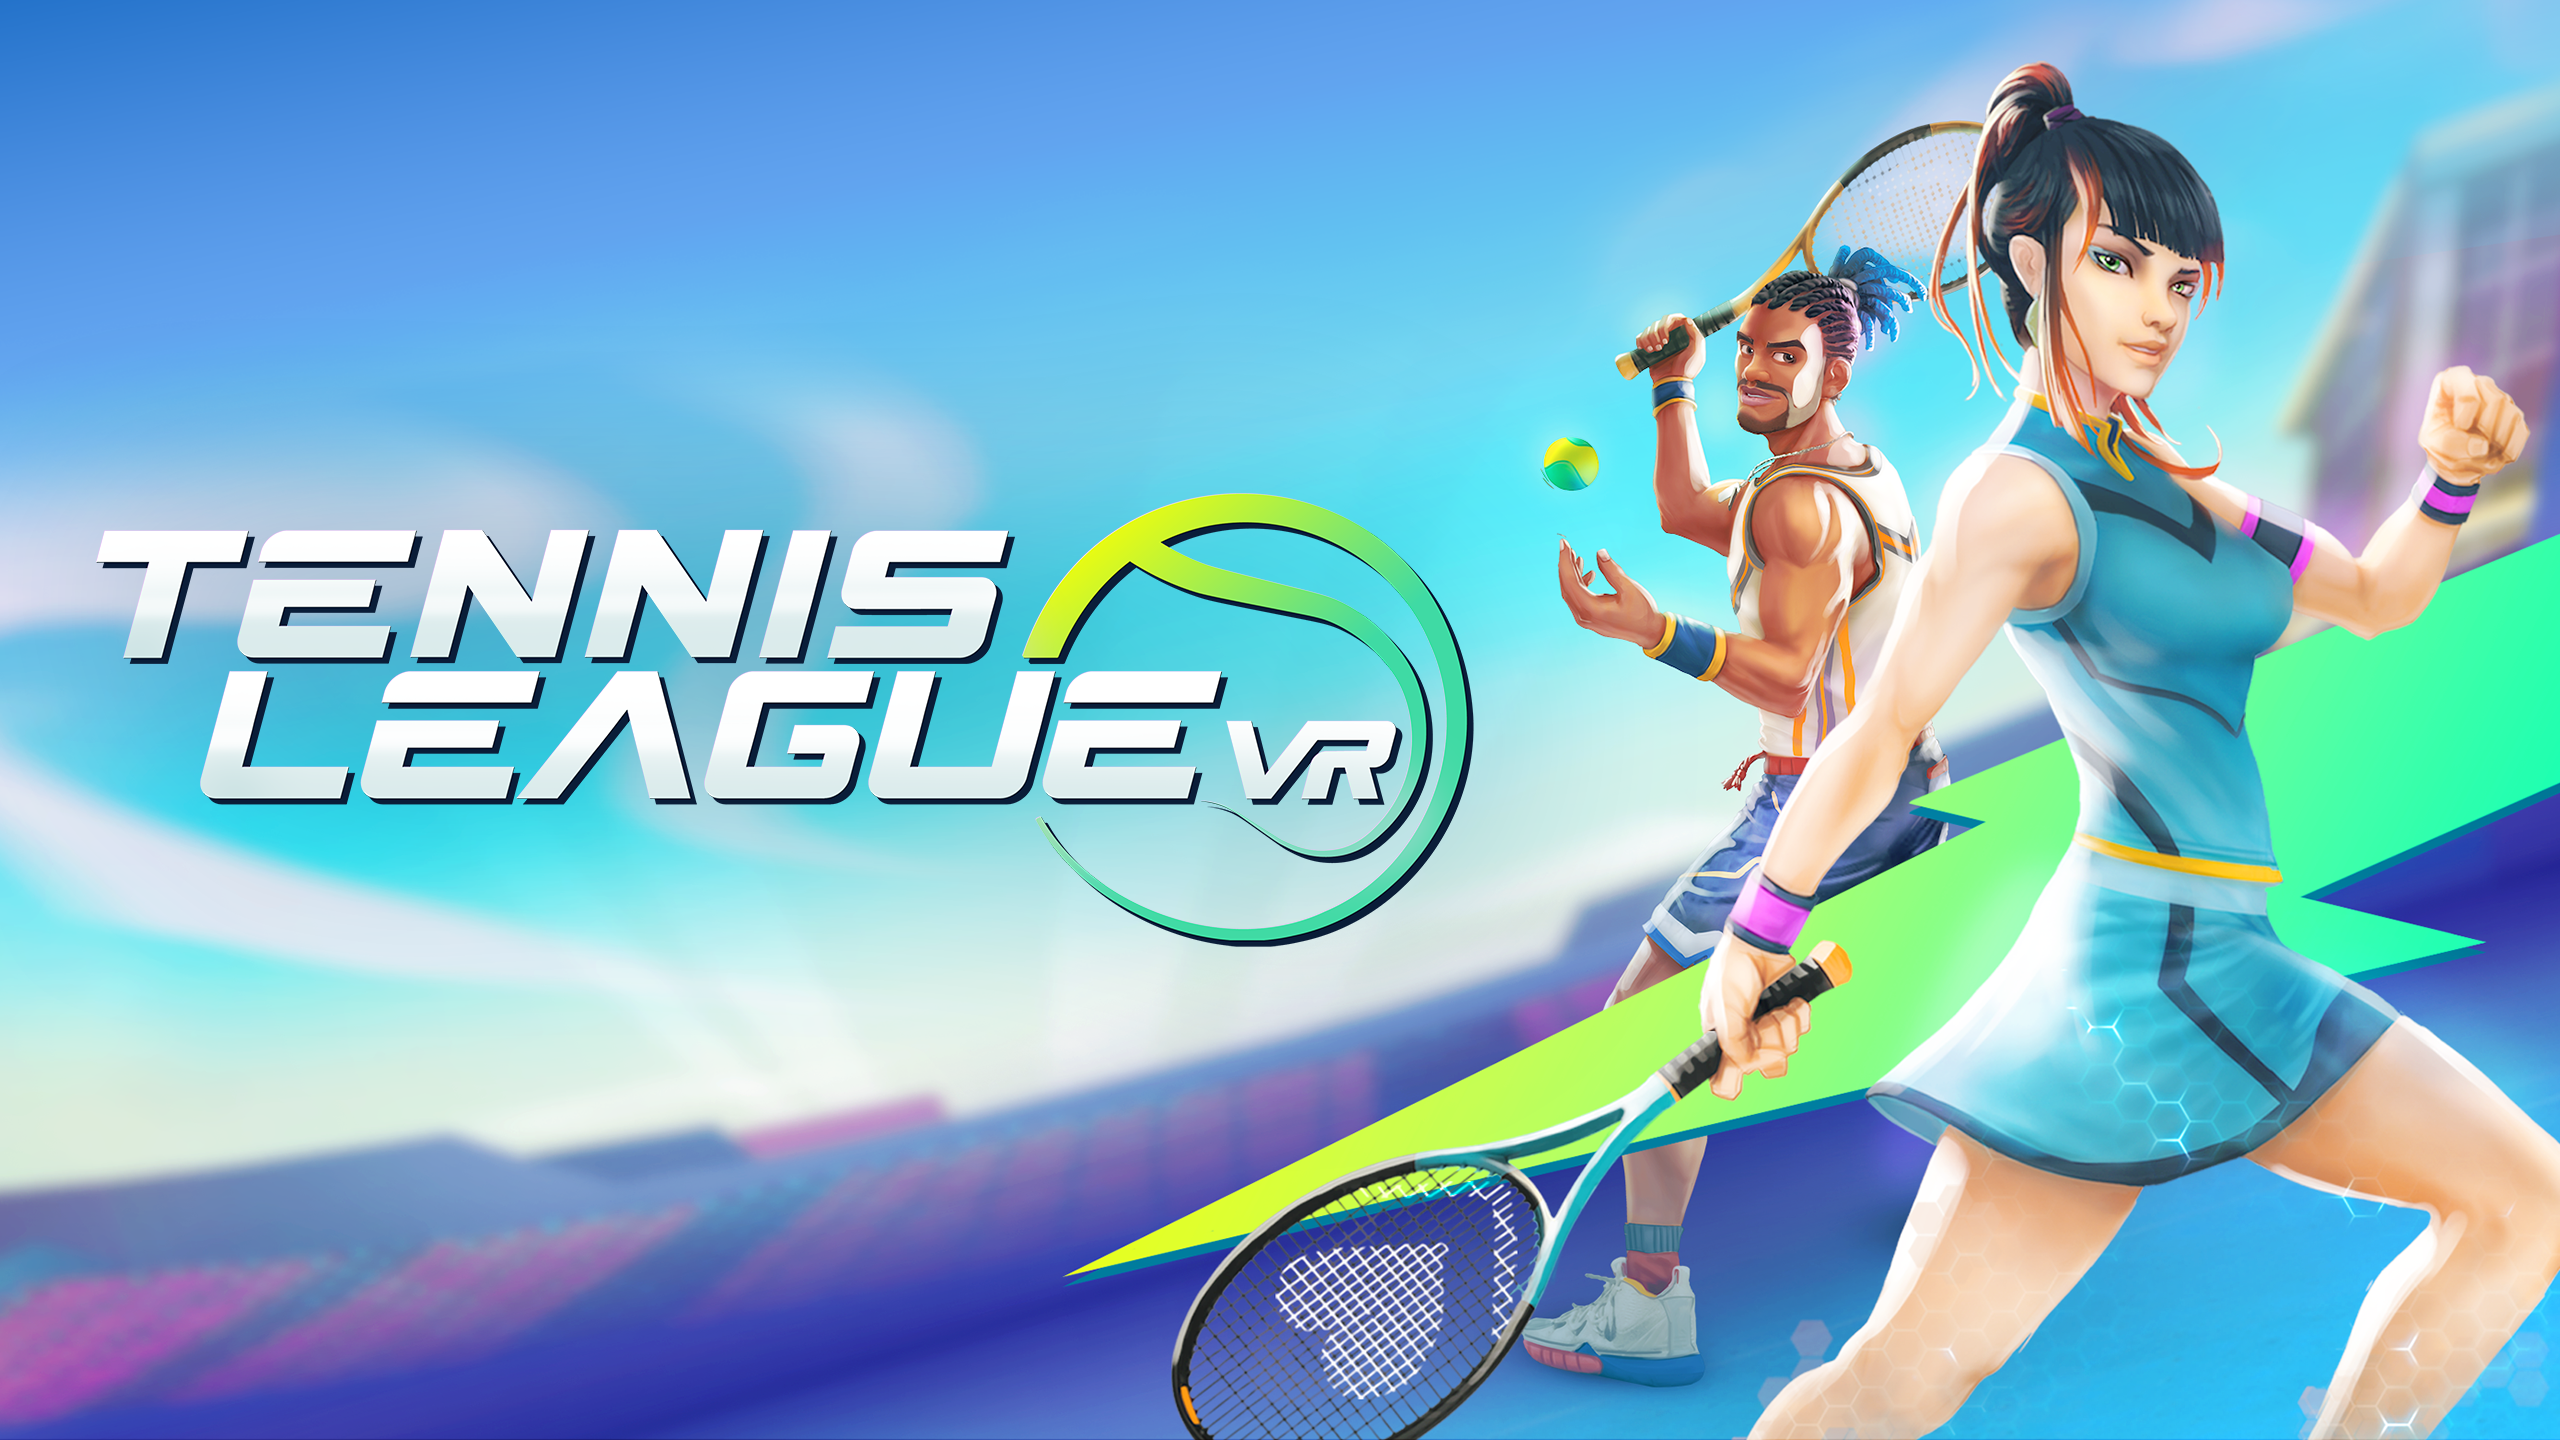 Tennis League VR Review